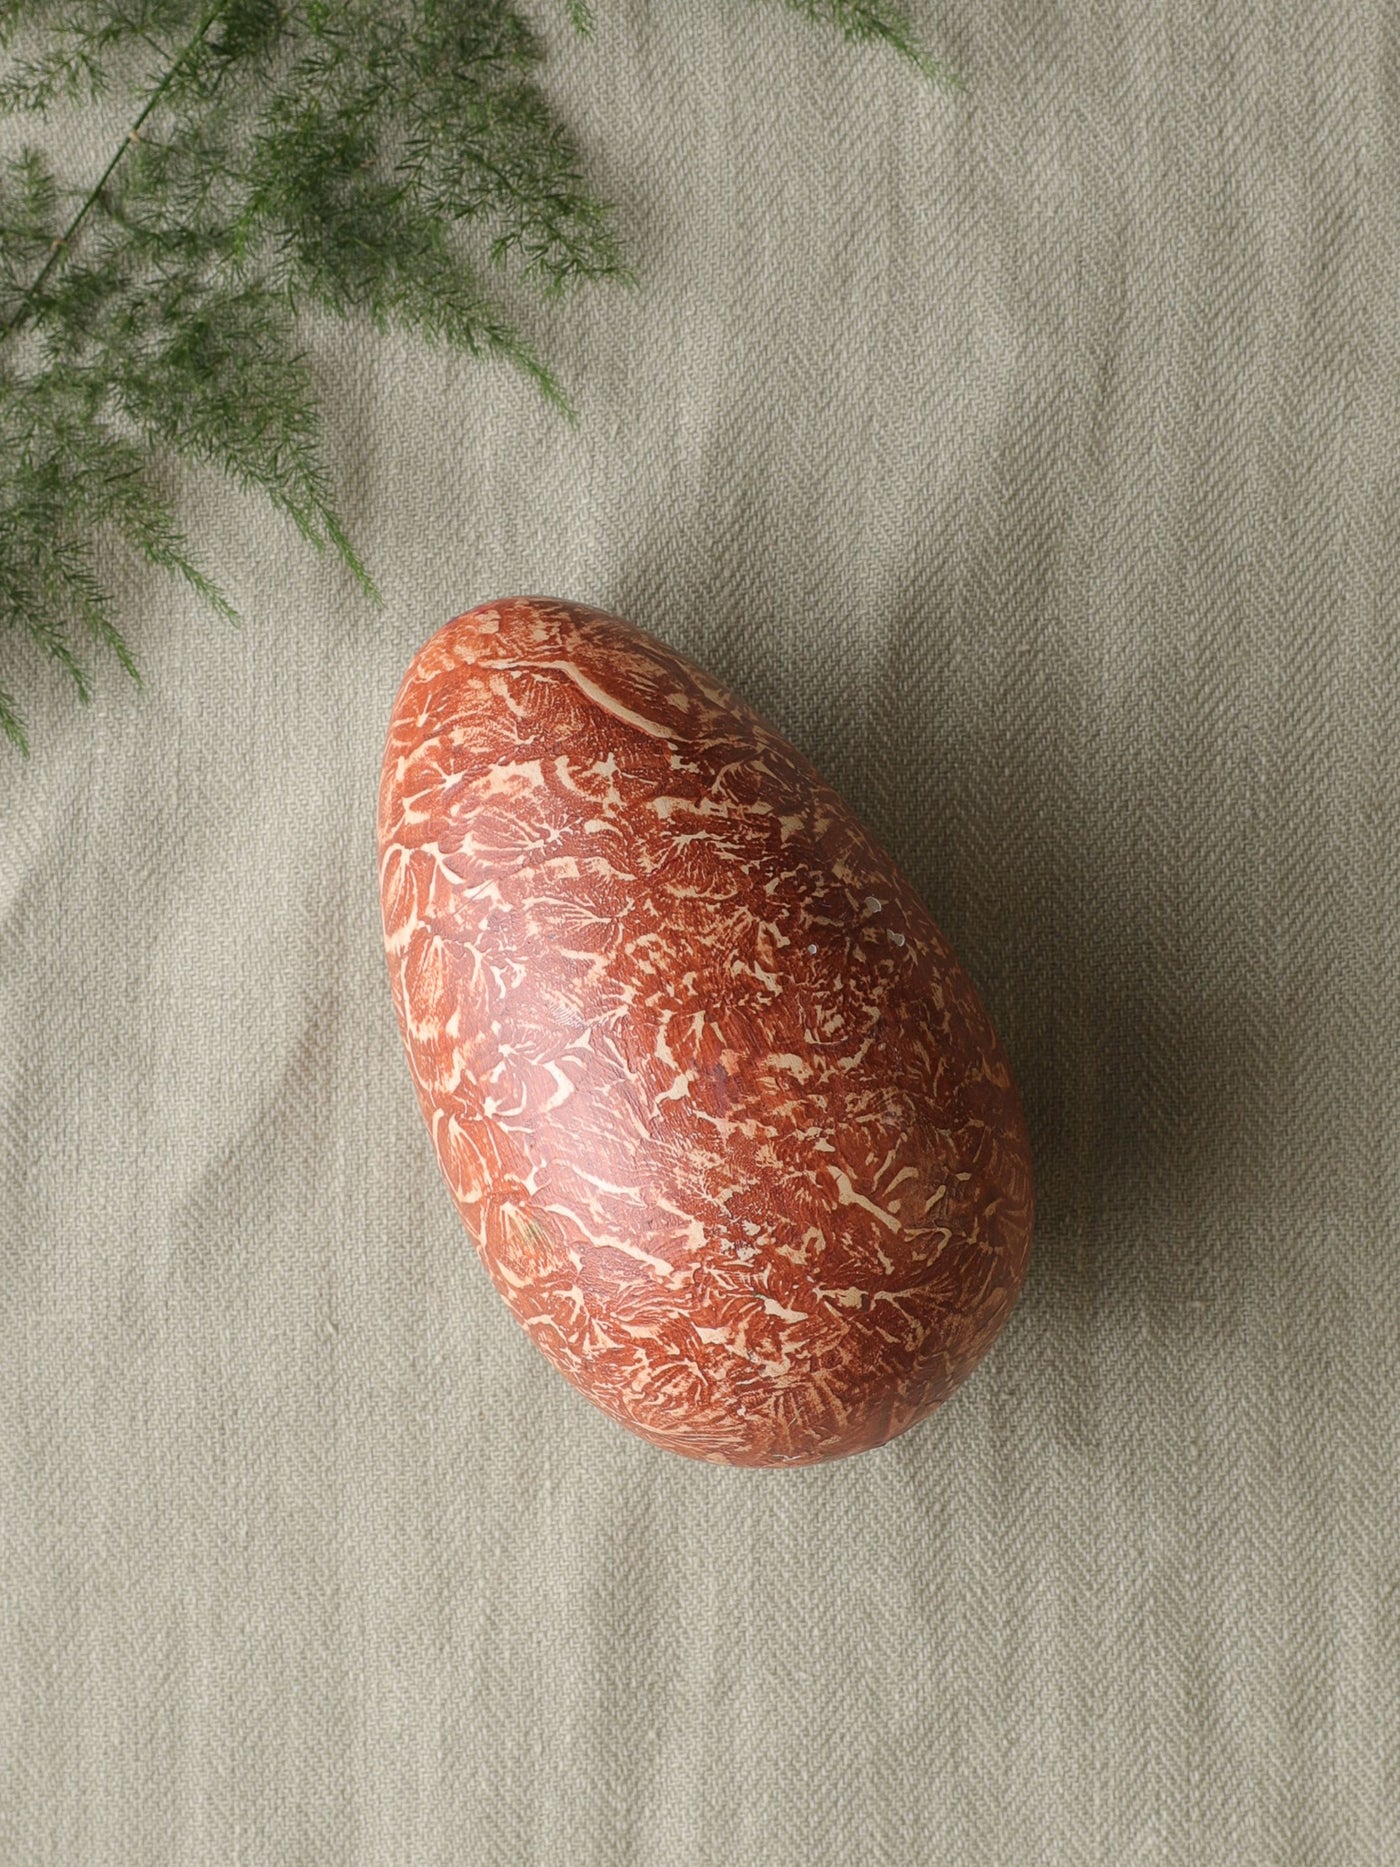 Handpainted Solid Wood Egg Brown